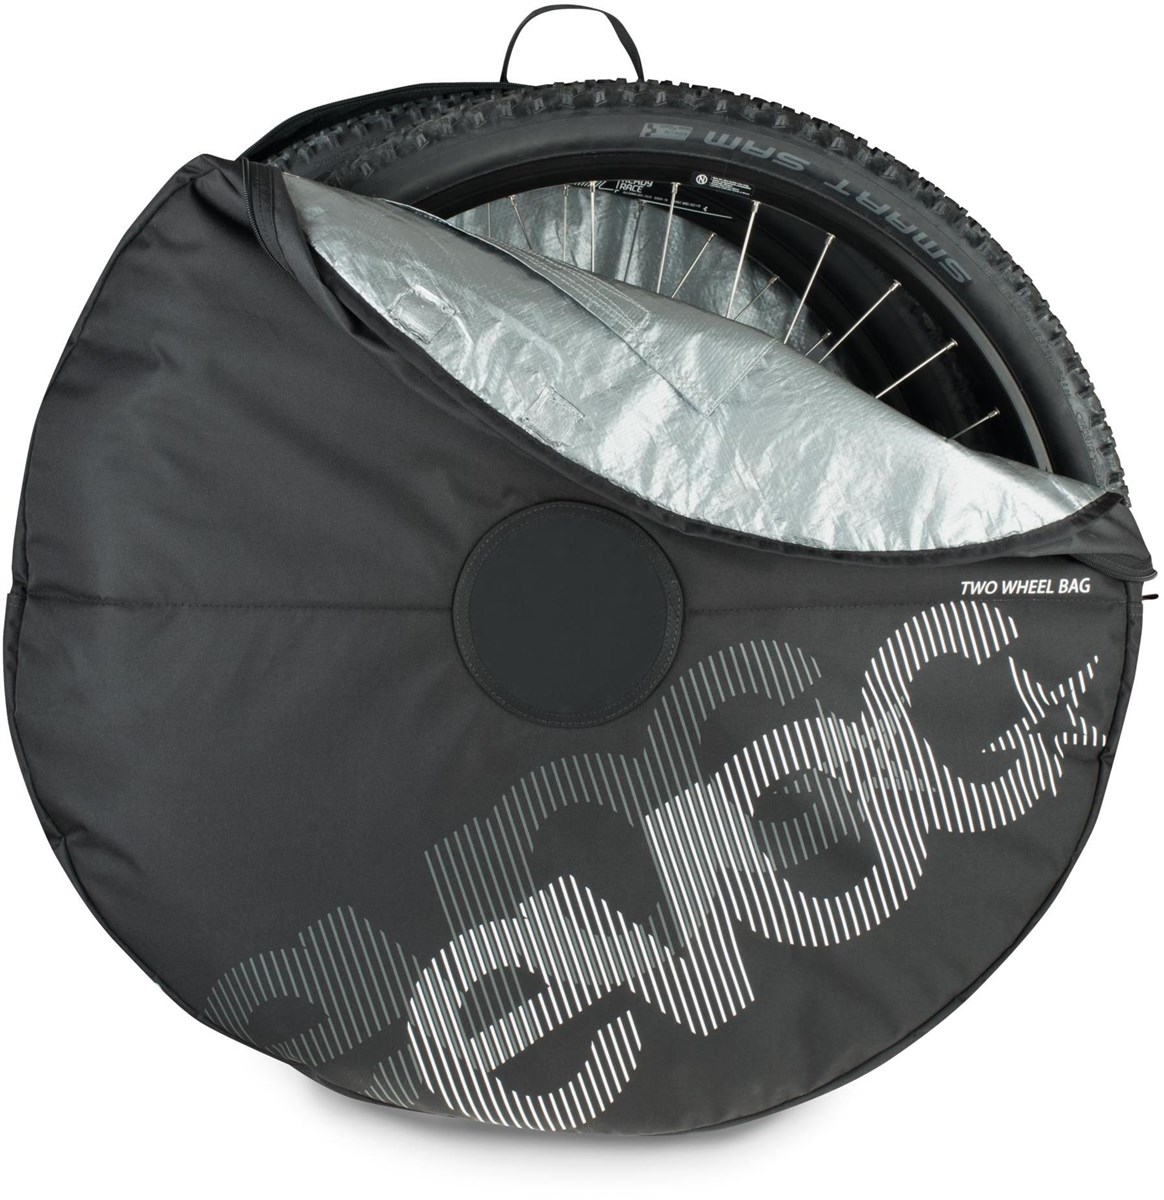 Evoc Two Wheel Bag product image